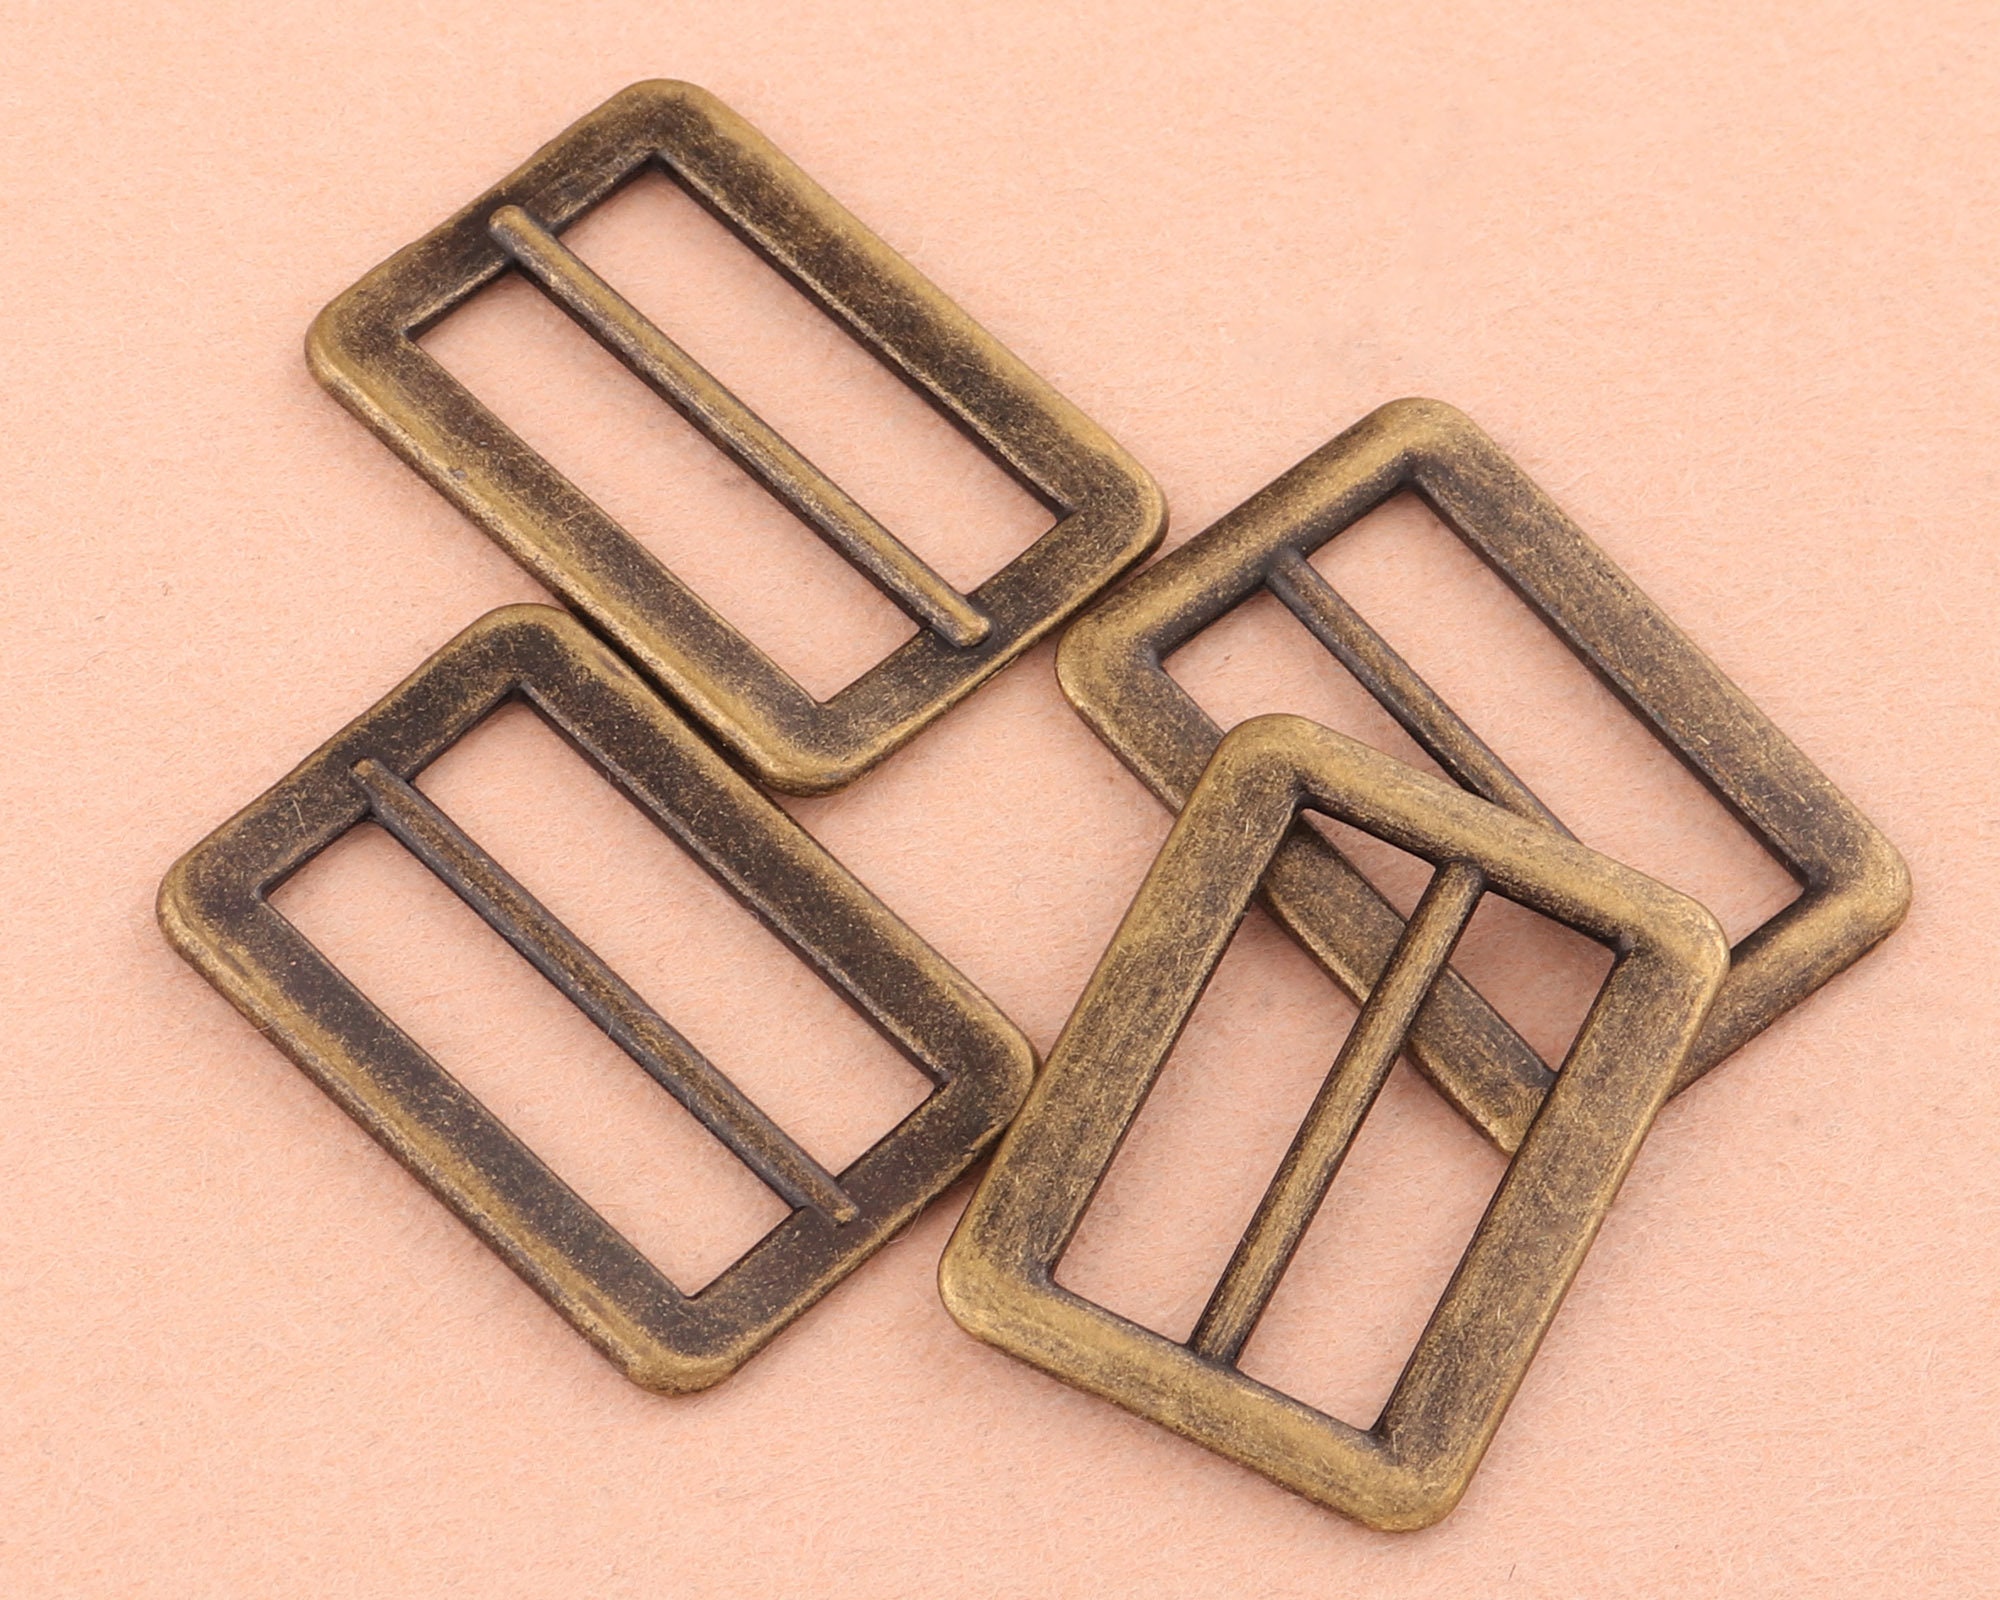 25mm Bronze Adjustable Belt Buckle Slide Buckles,rectangle Metal